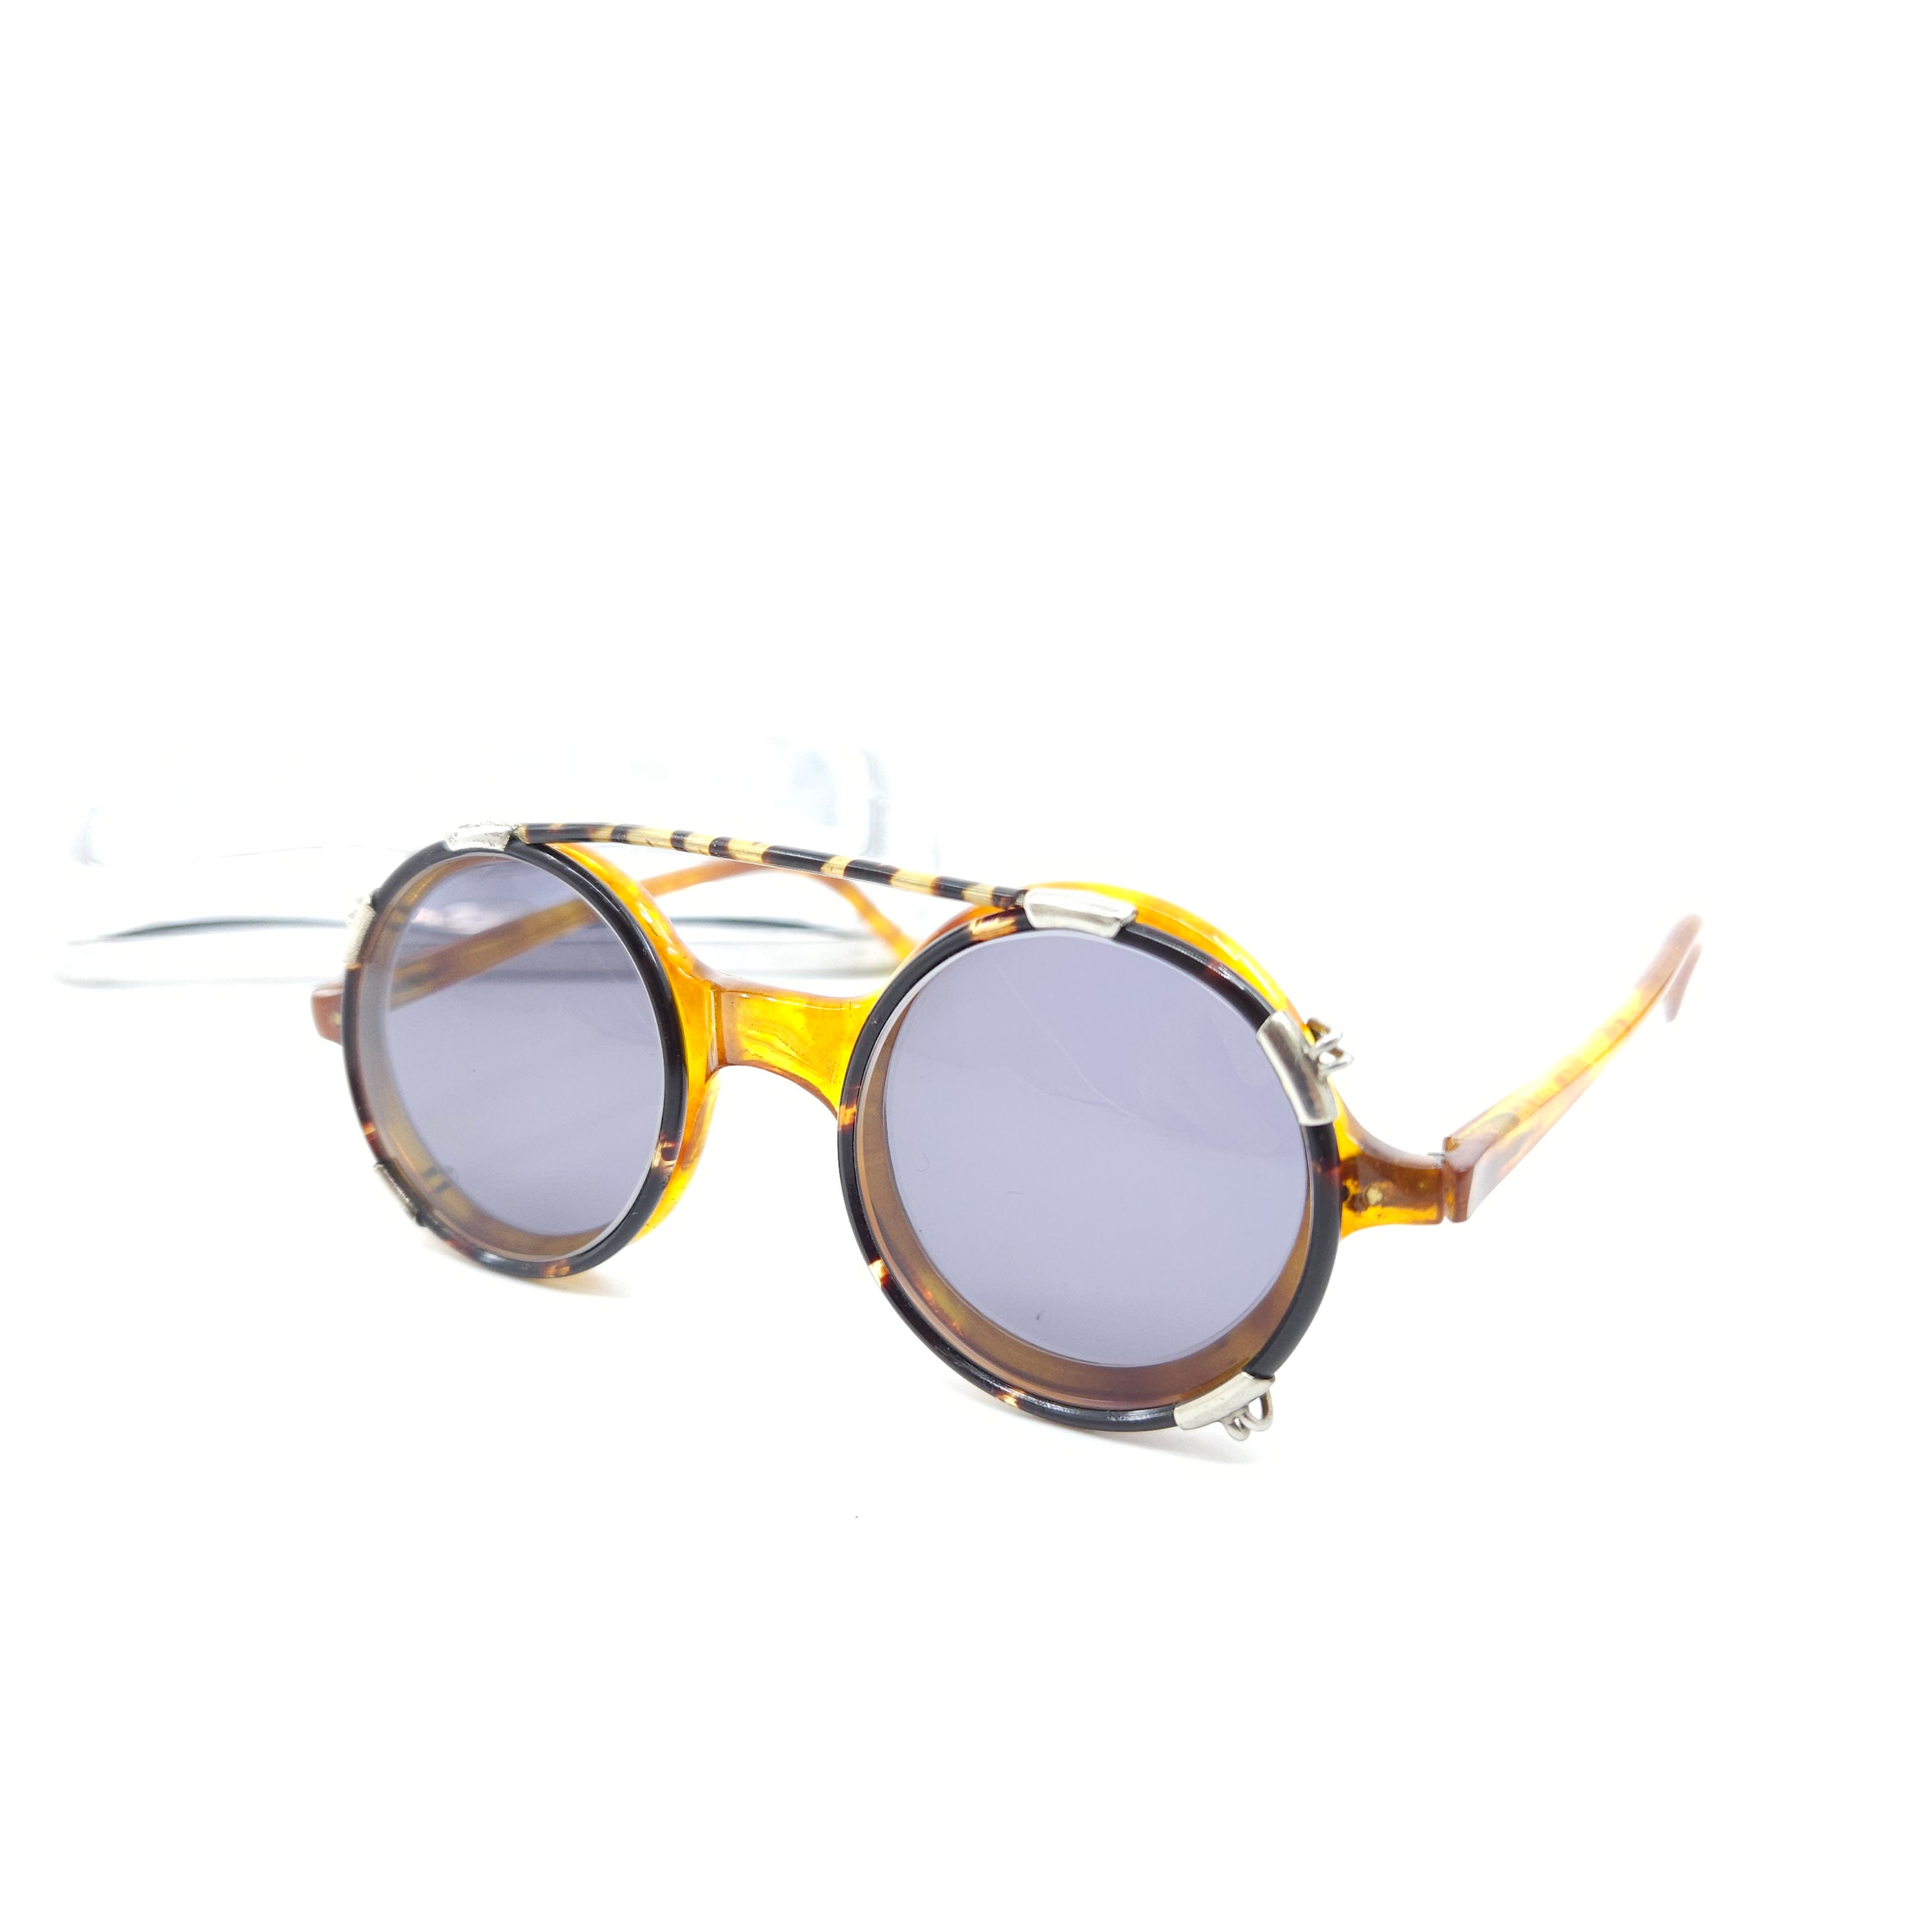 Premium Brille Sonnenbrille Clip Halter Klammer Karte für